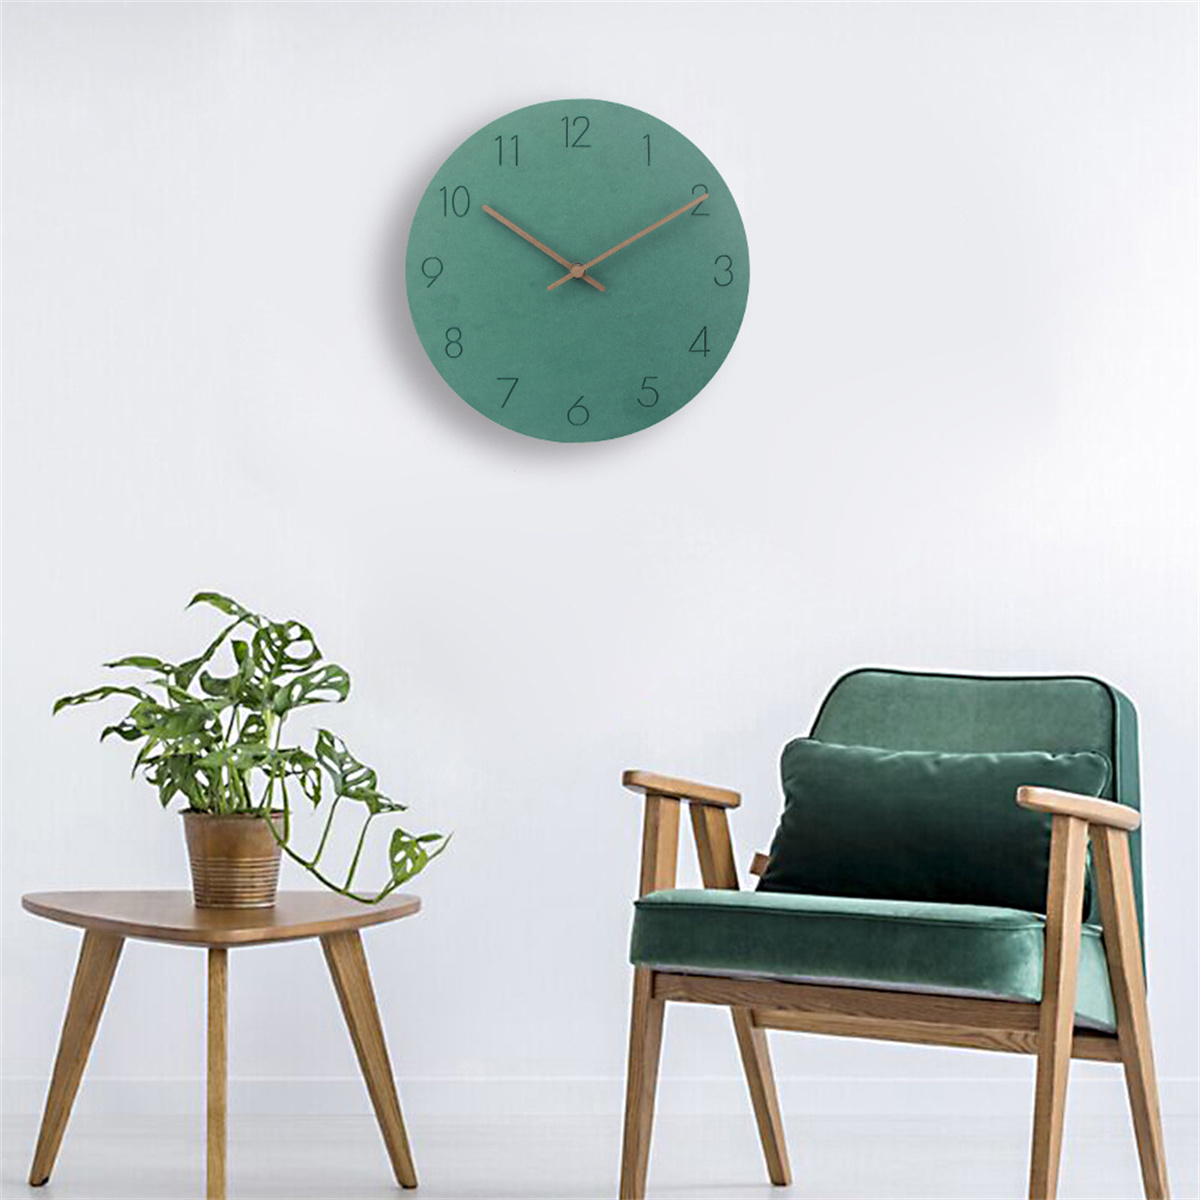 SYNTEK Uhr Wohnzimmer Wanduhr aus hängen minimalistische kreativ Uhren Holz stumm Wanduhr braun